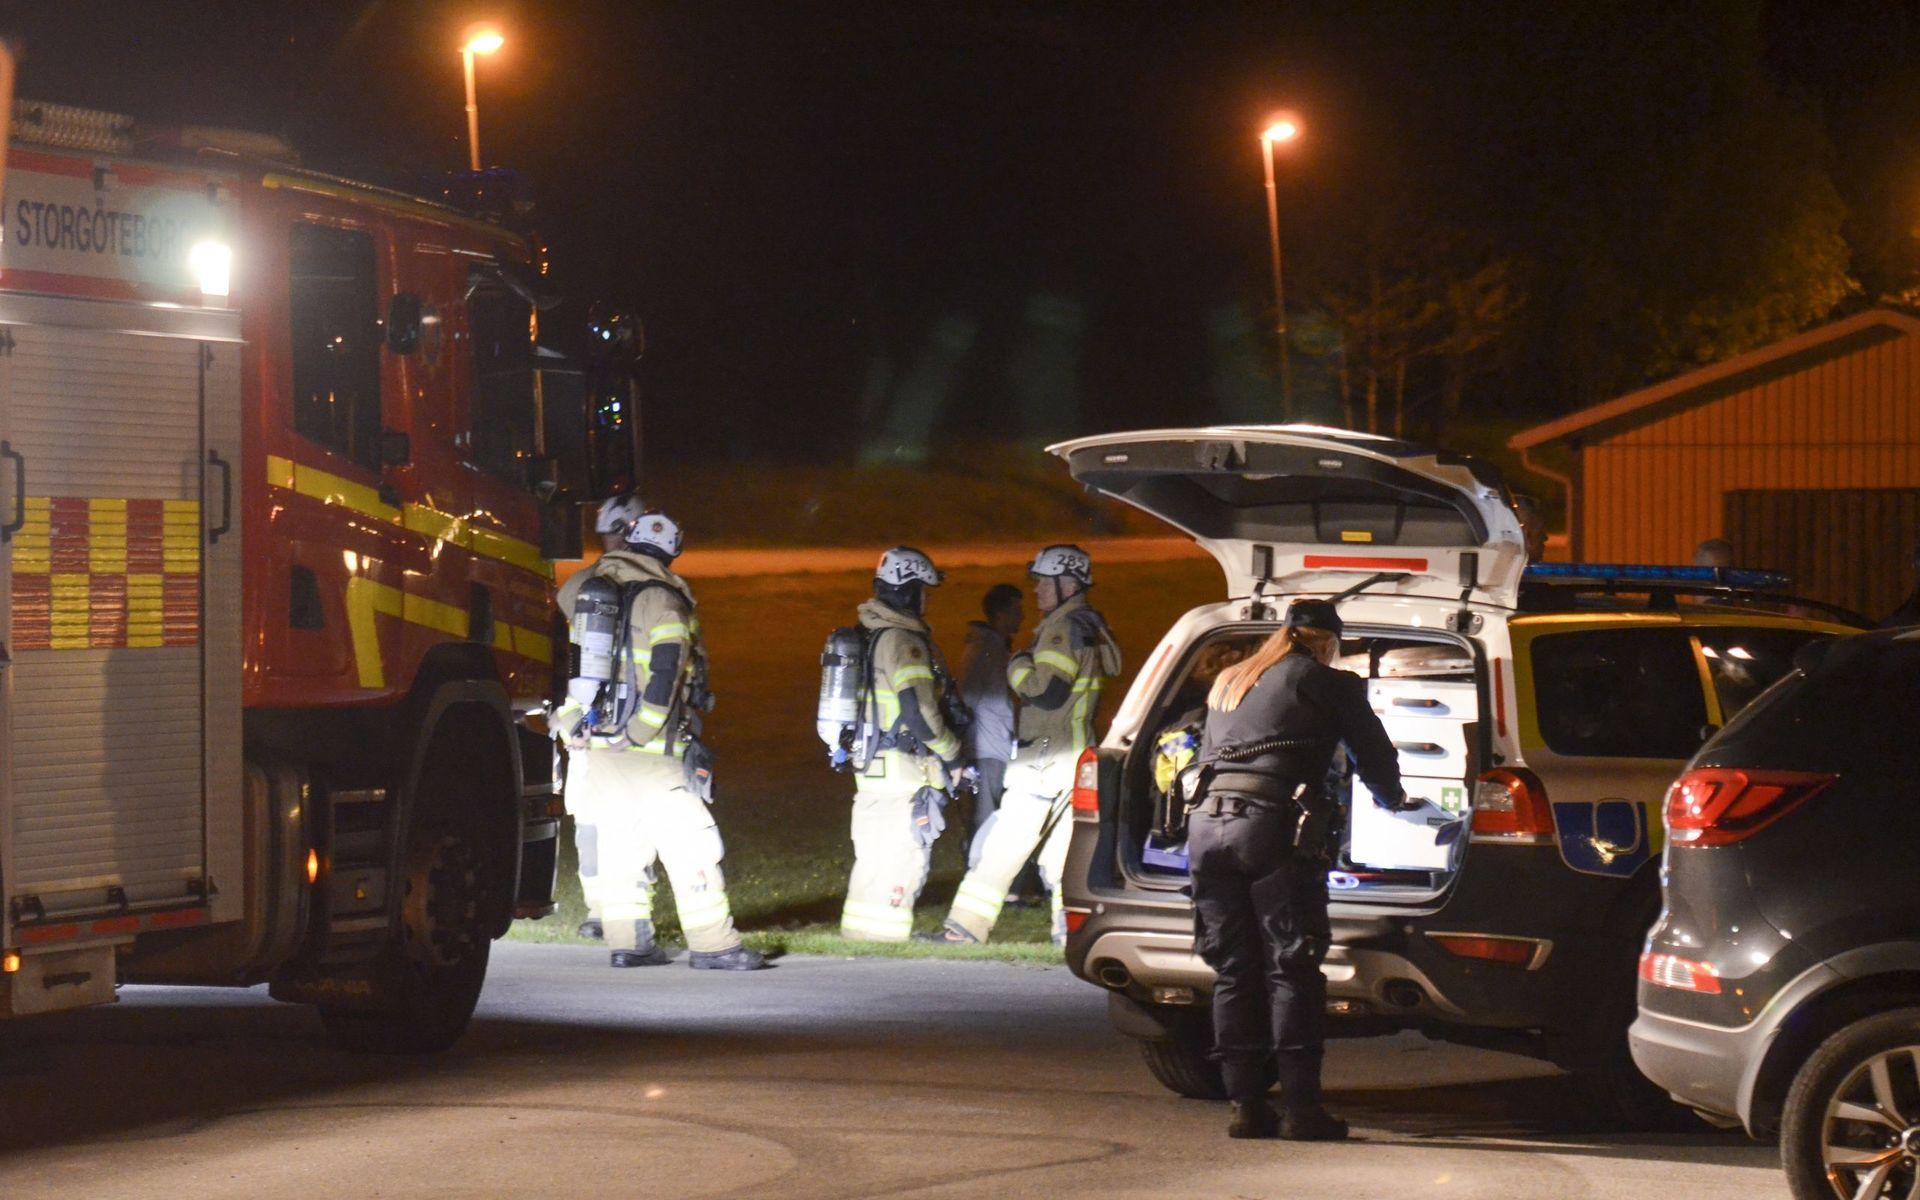 Polis, räddningstjänst och bombskydd har varit på plats i Lerum under natten.